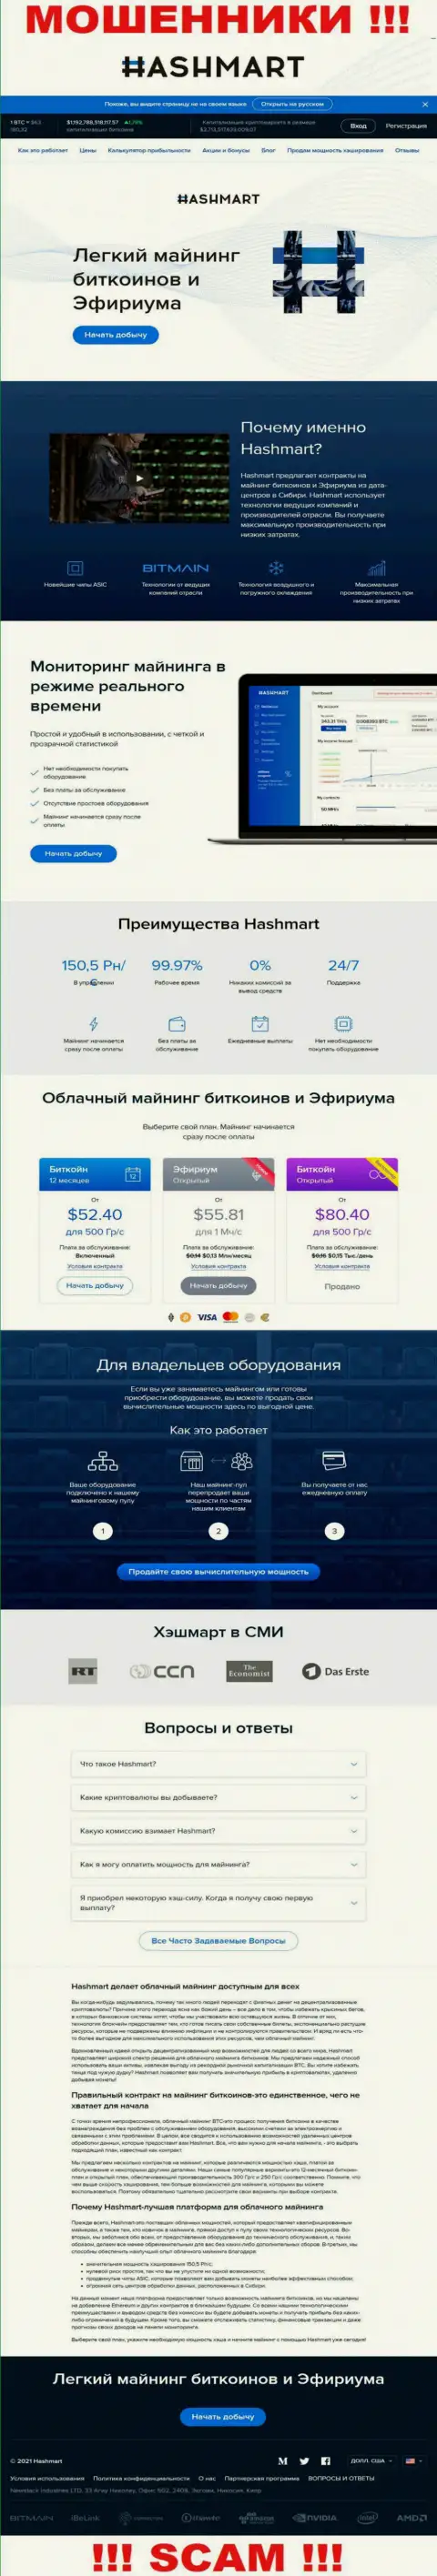 Скрин официального информационного сервиса Невстак Индустрис Лтд, переполненного фейковыми обещаниями